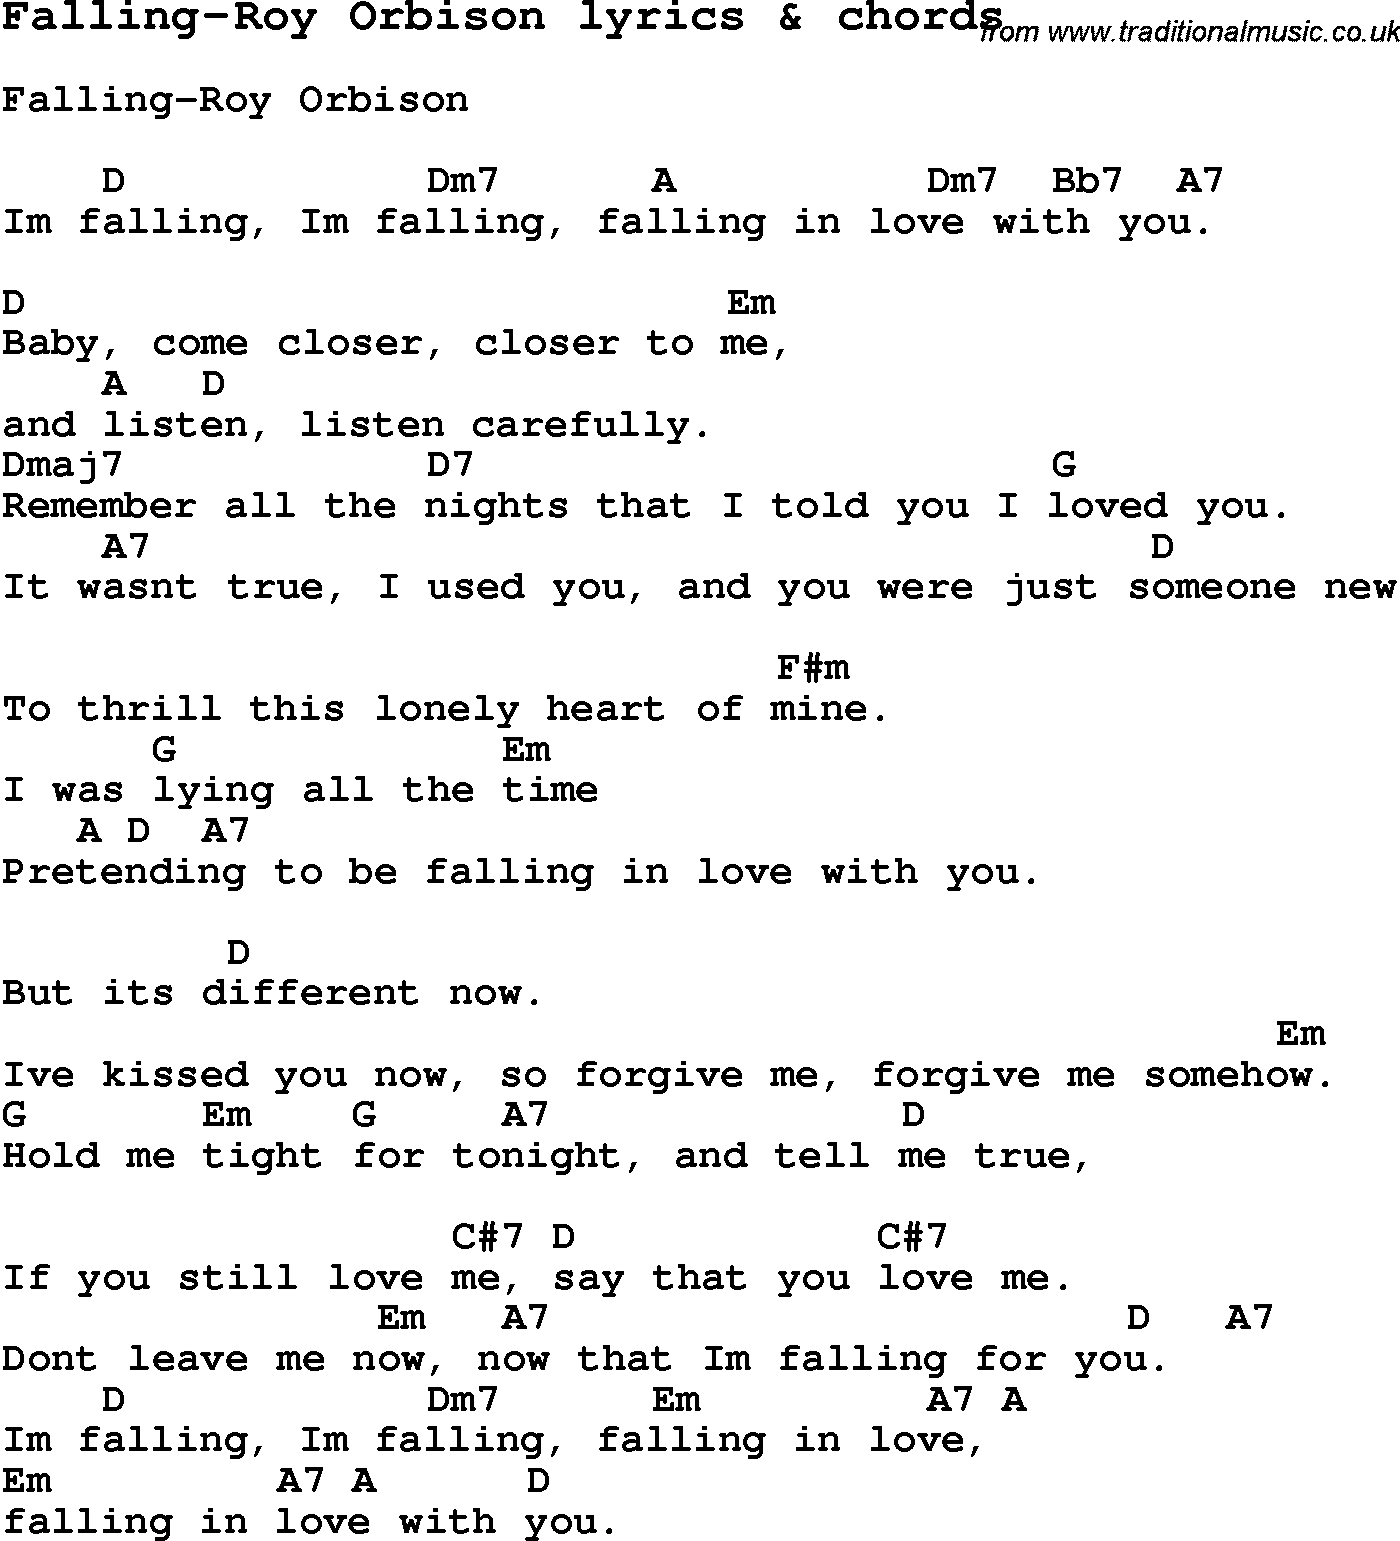 Love Song Lyrics for: Falling-Roy Orbison with chords for Ukulele, Guitar Banjo etc.